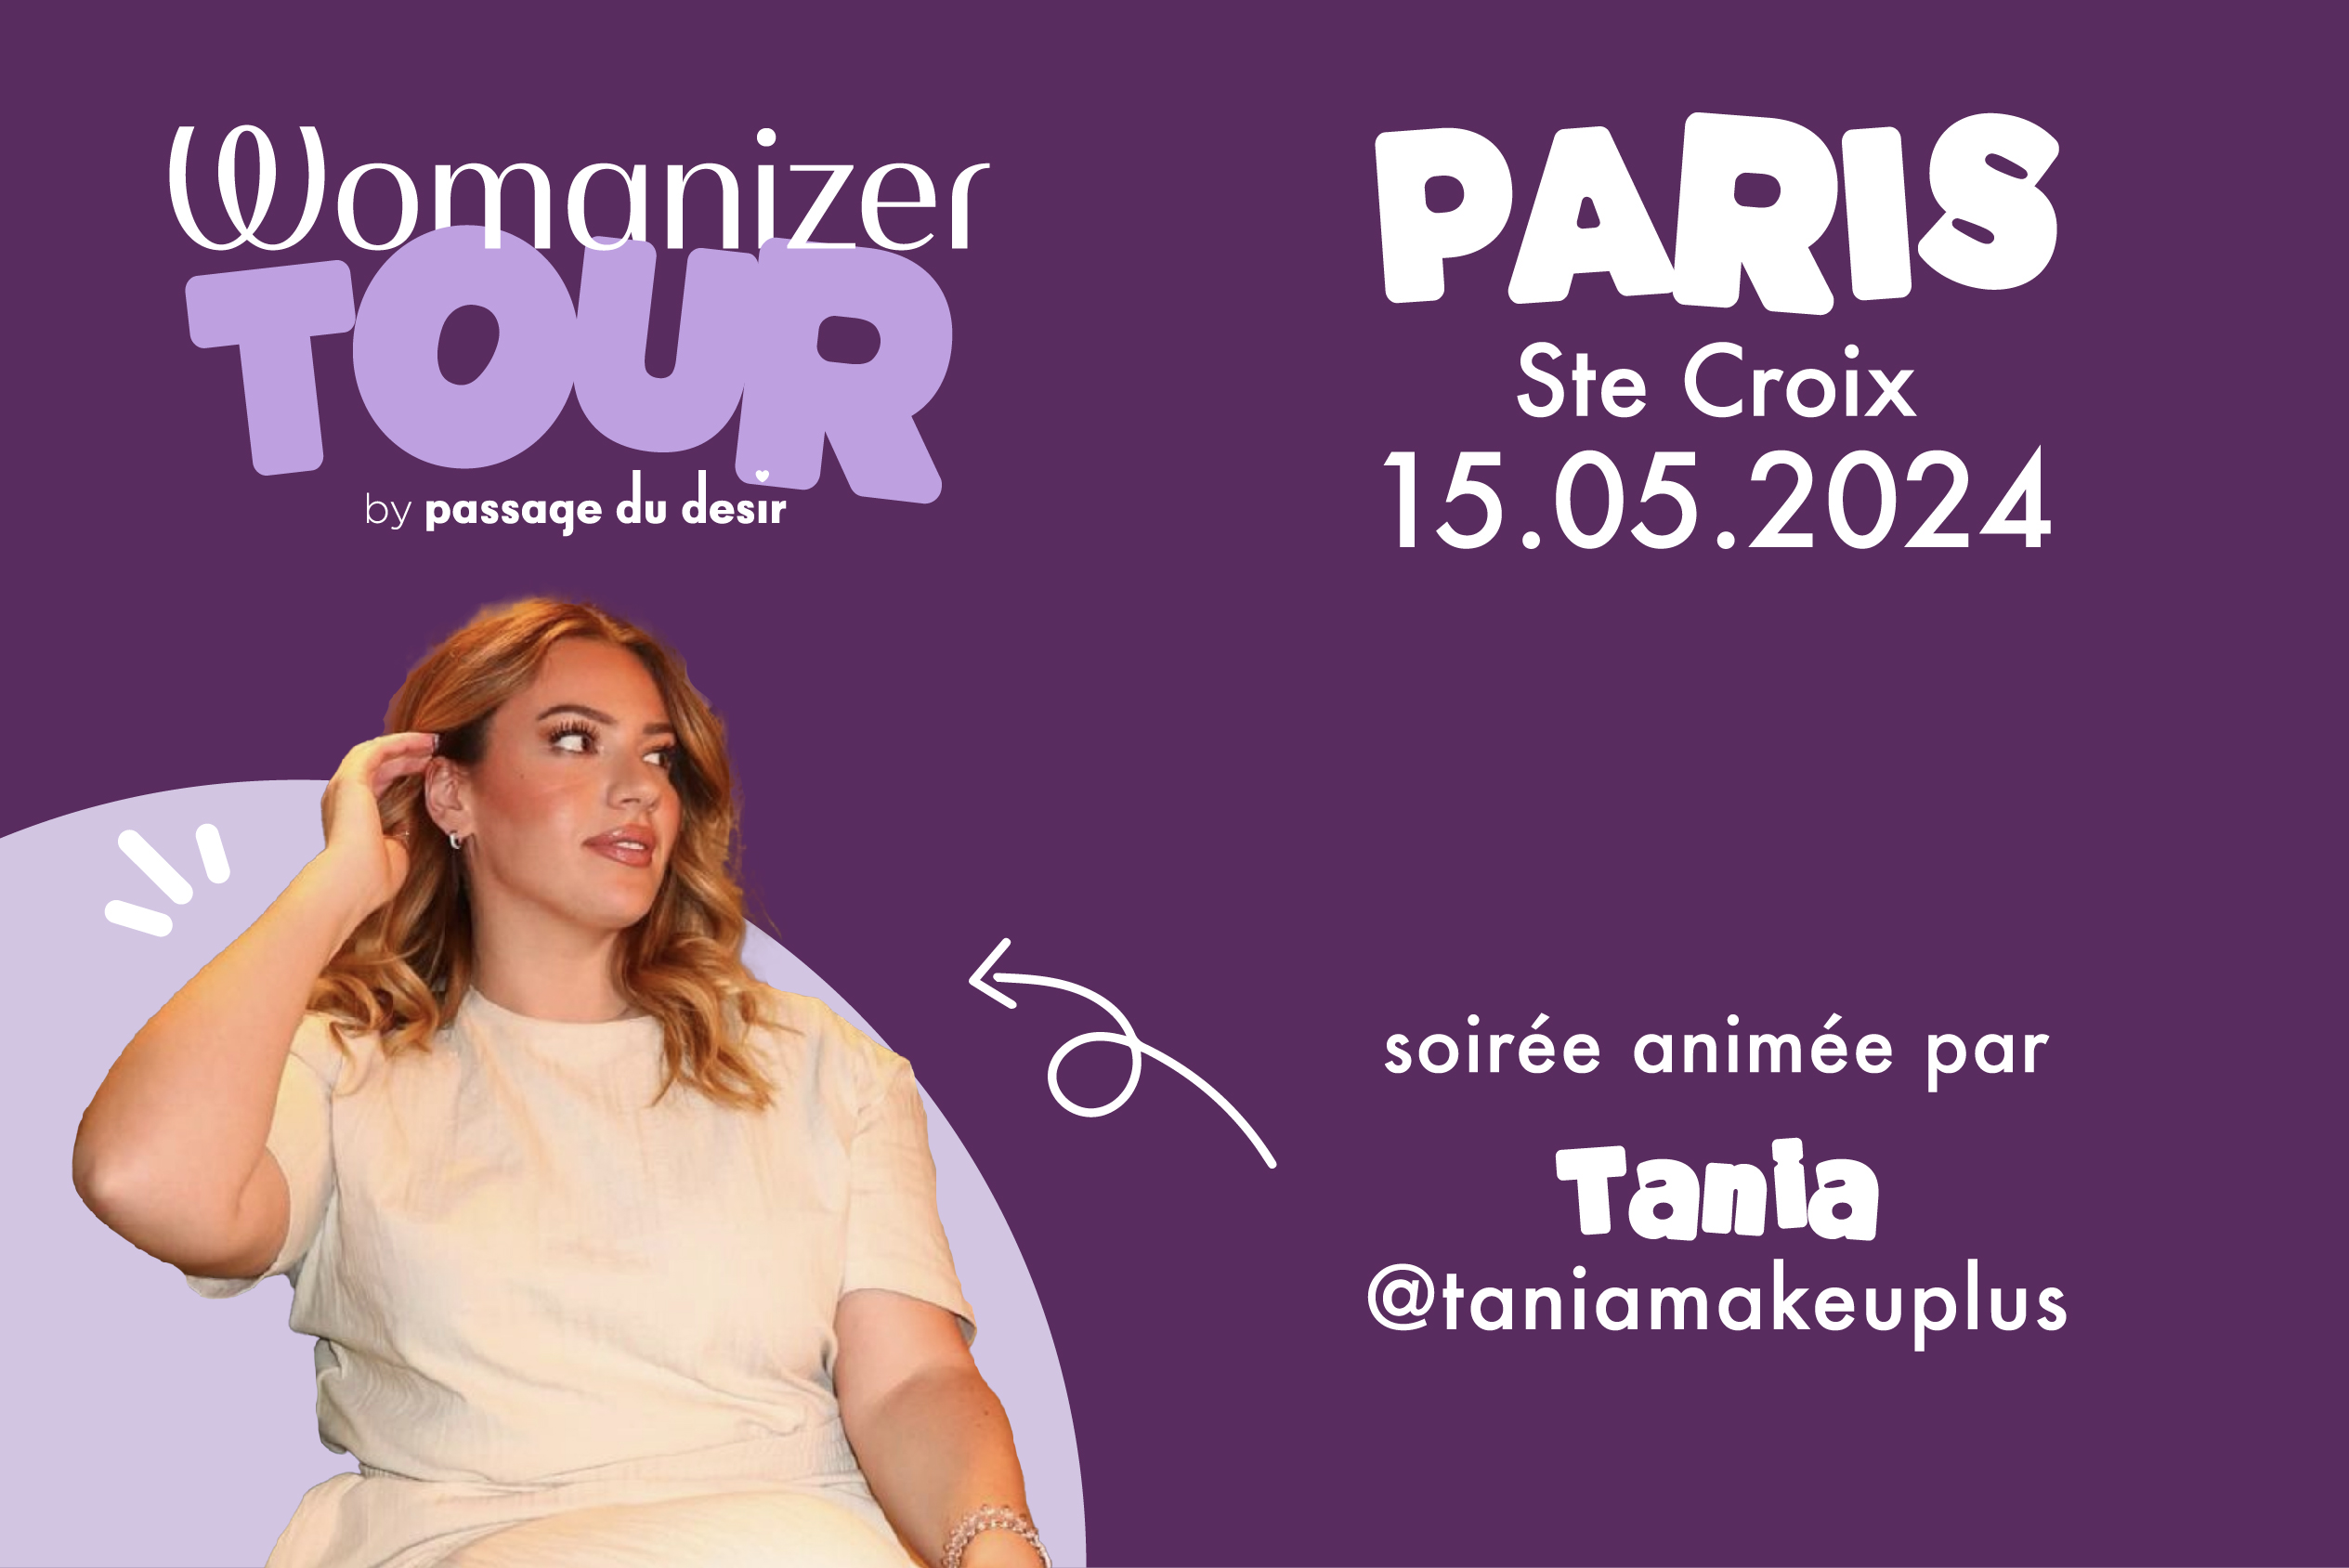 Womanizer tour Paris boutique Sainte Croix